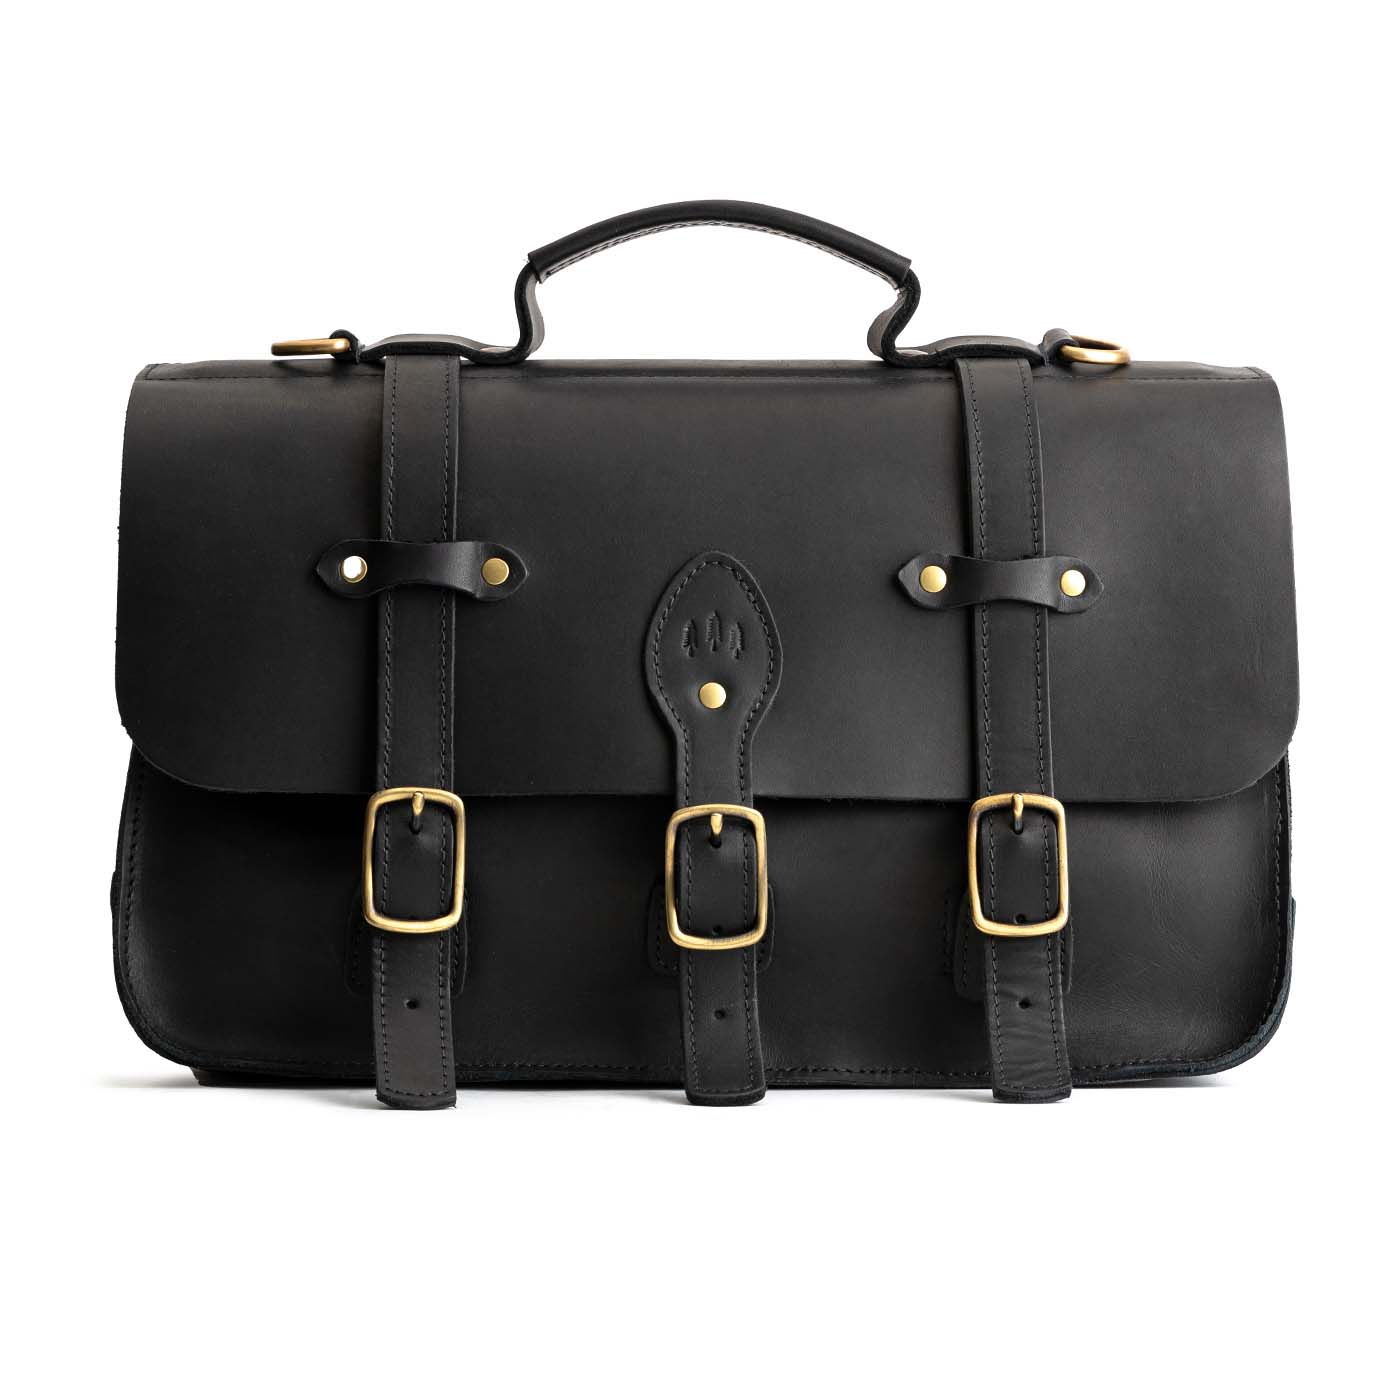 All Color: Black | handmade leather messenger bag